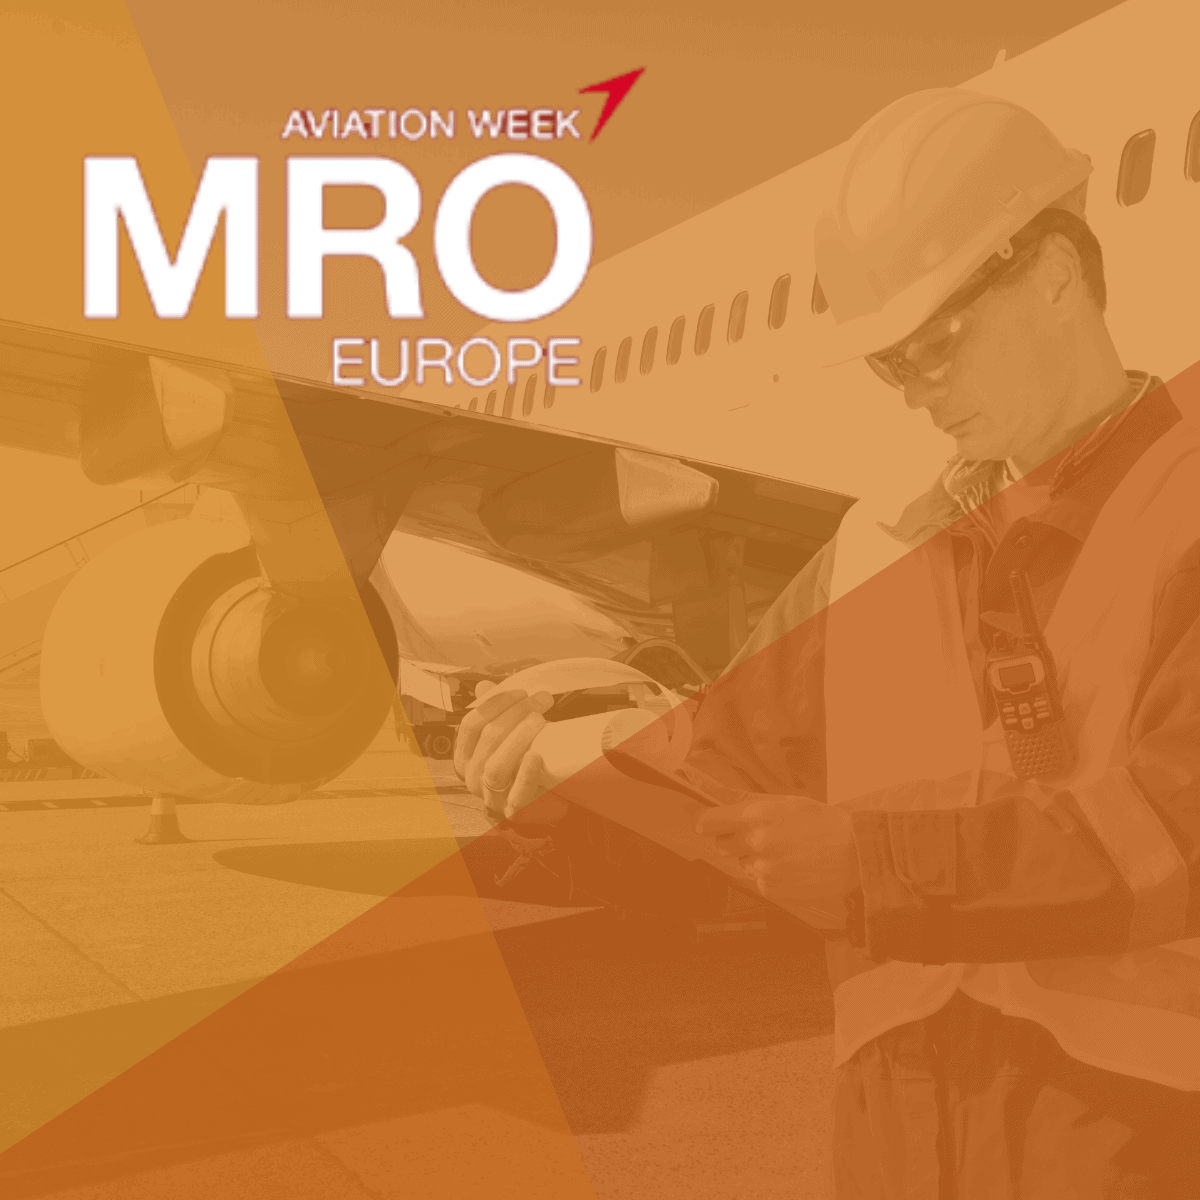 Solution de reparation rapide de blessure de peinture sur avion pour maximiser les maintenance MRO